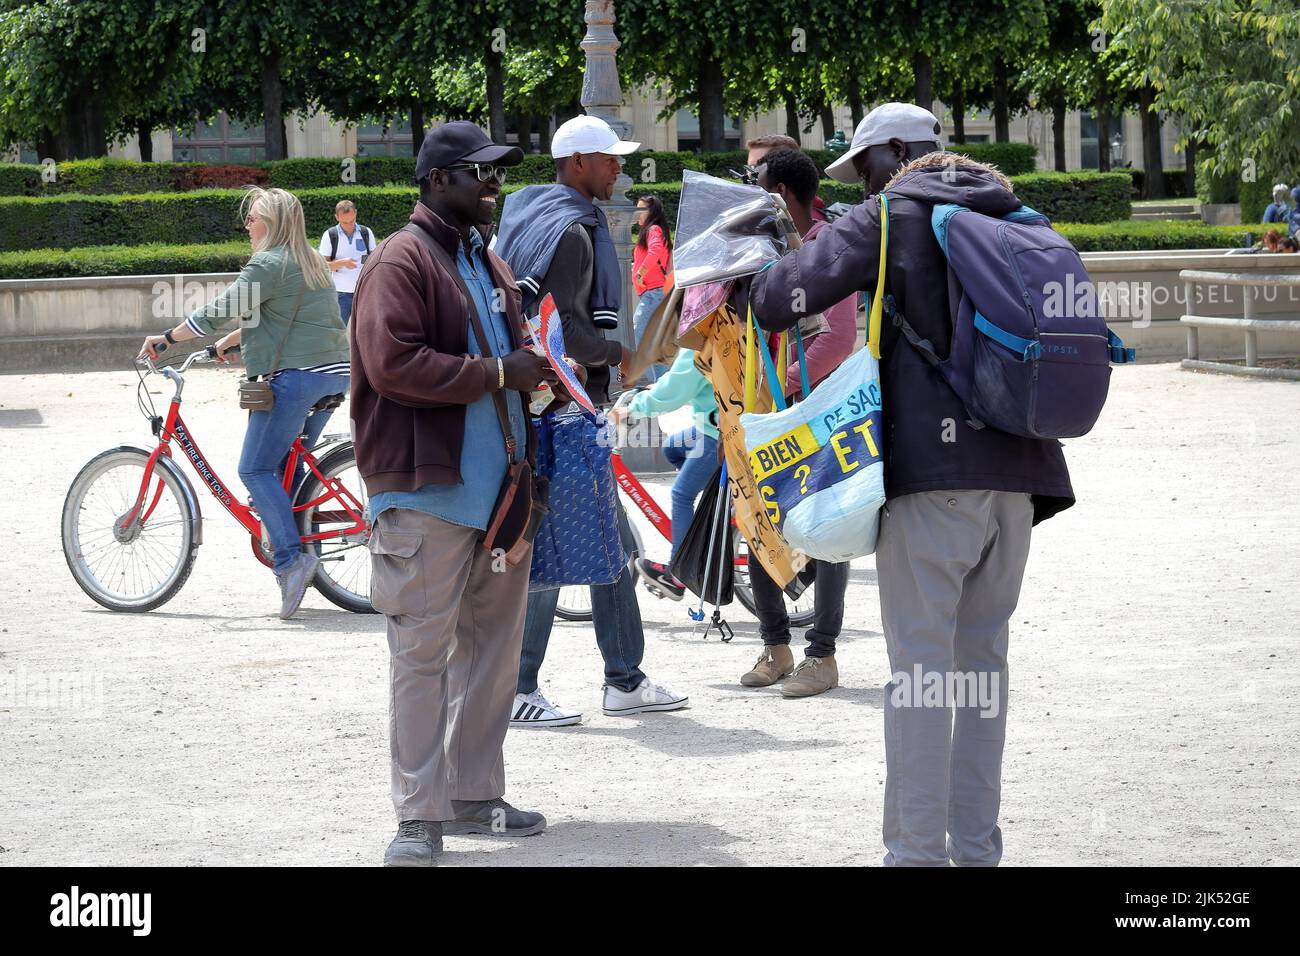 Paris / France - June 10 2019: street vendors selling souvenirs to tourists near the Arc de Triomphe du Carrousel in Tuileries garden in Paris, France Stock Photo